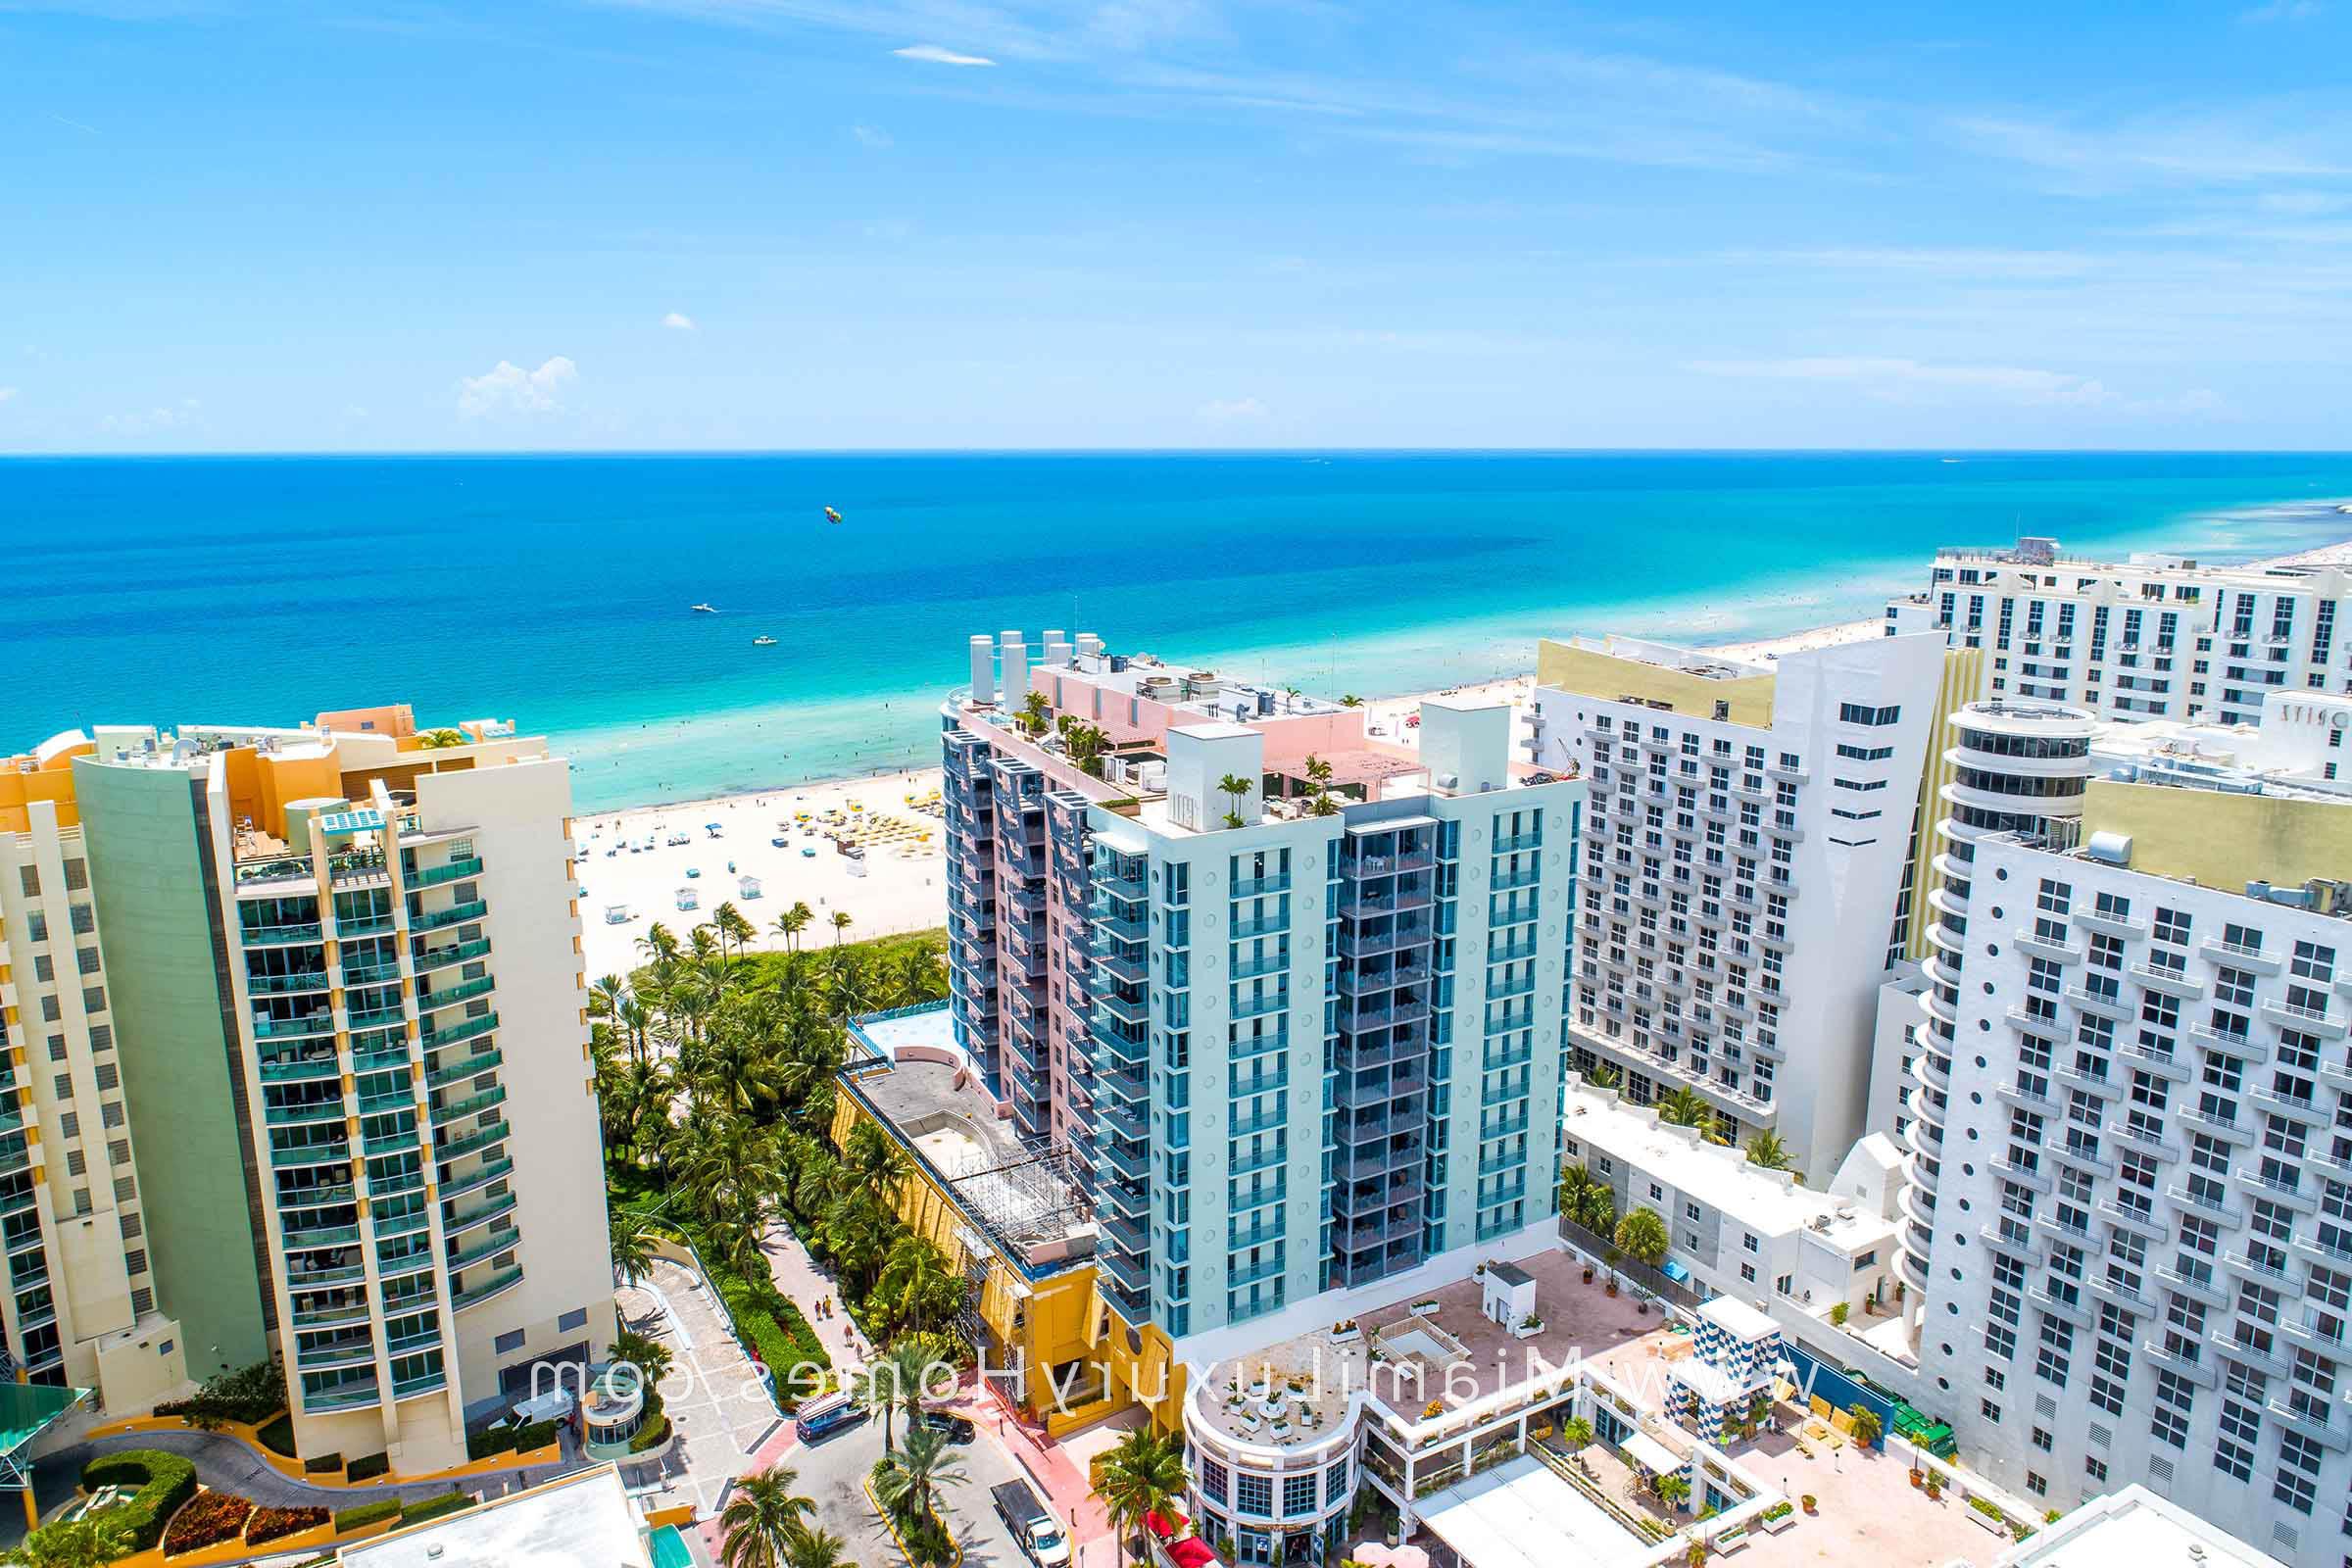 迈阿密海滩海洋大道1500号公寓